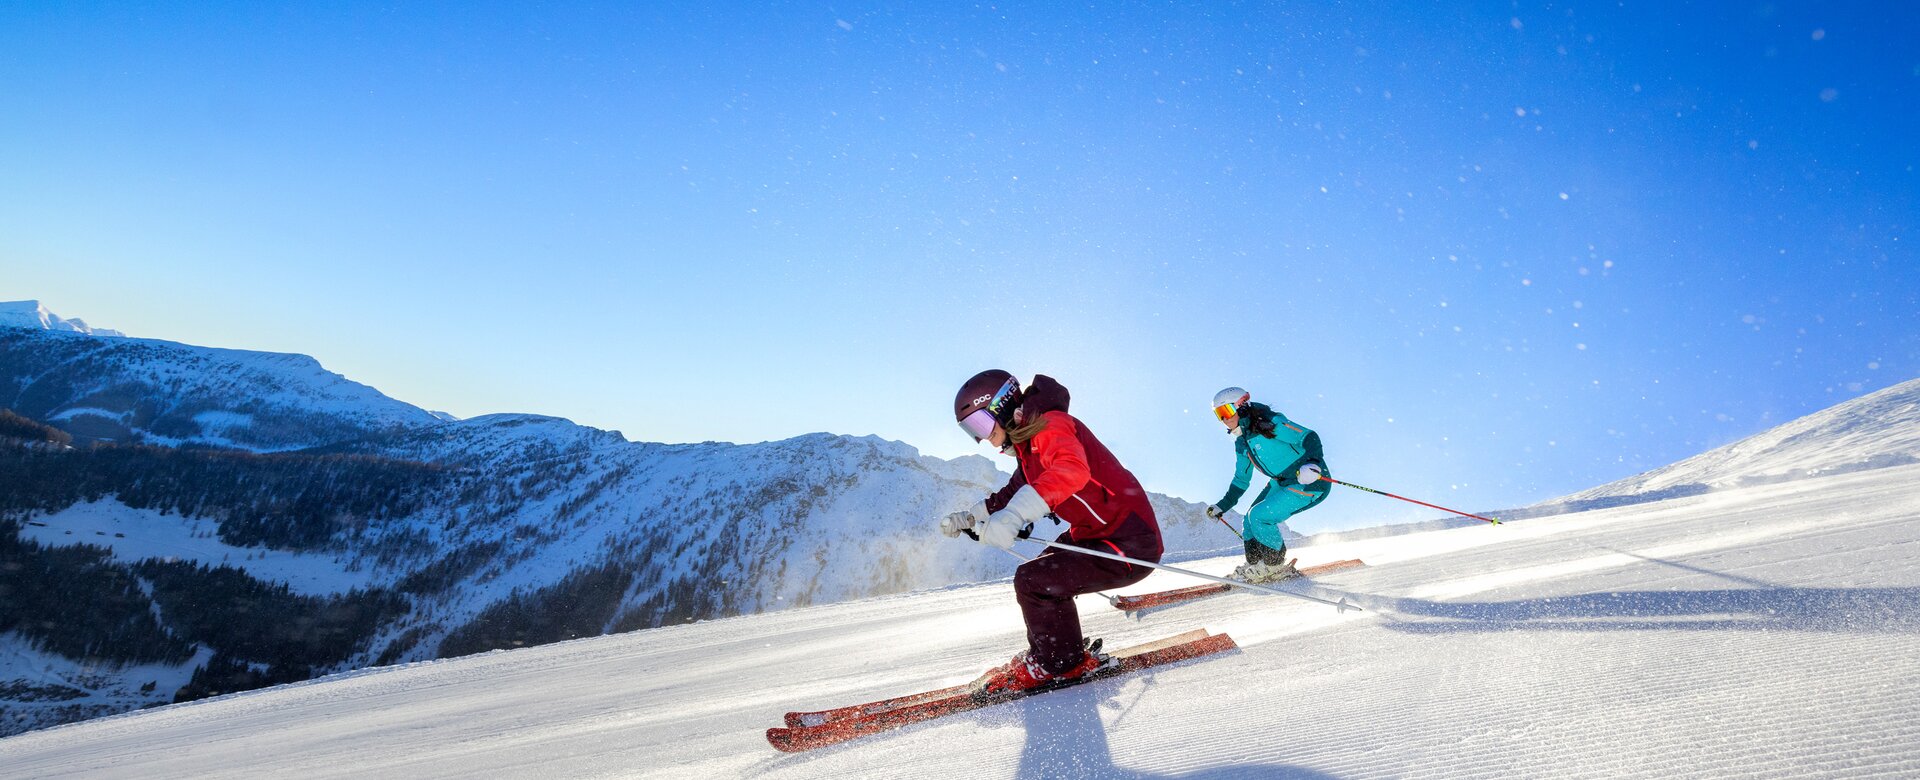 Zwei Skifahrerinnen, eine in Blau und die andere in rot, fahren die präparierte Piste hinunter und im Hintergrund sind Berggipfel zu sehen